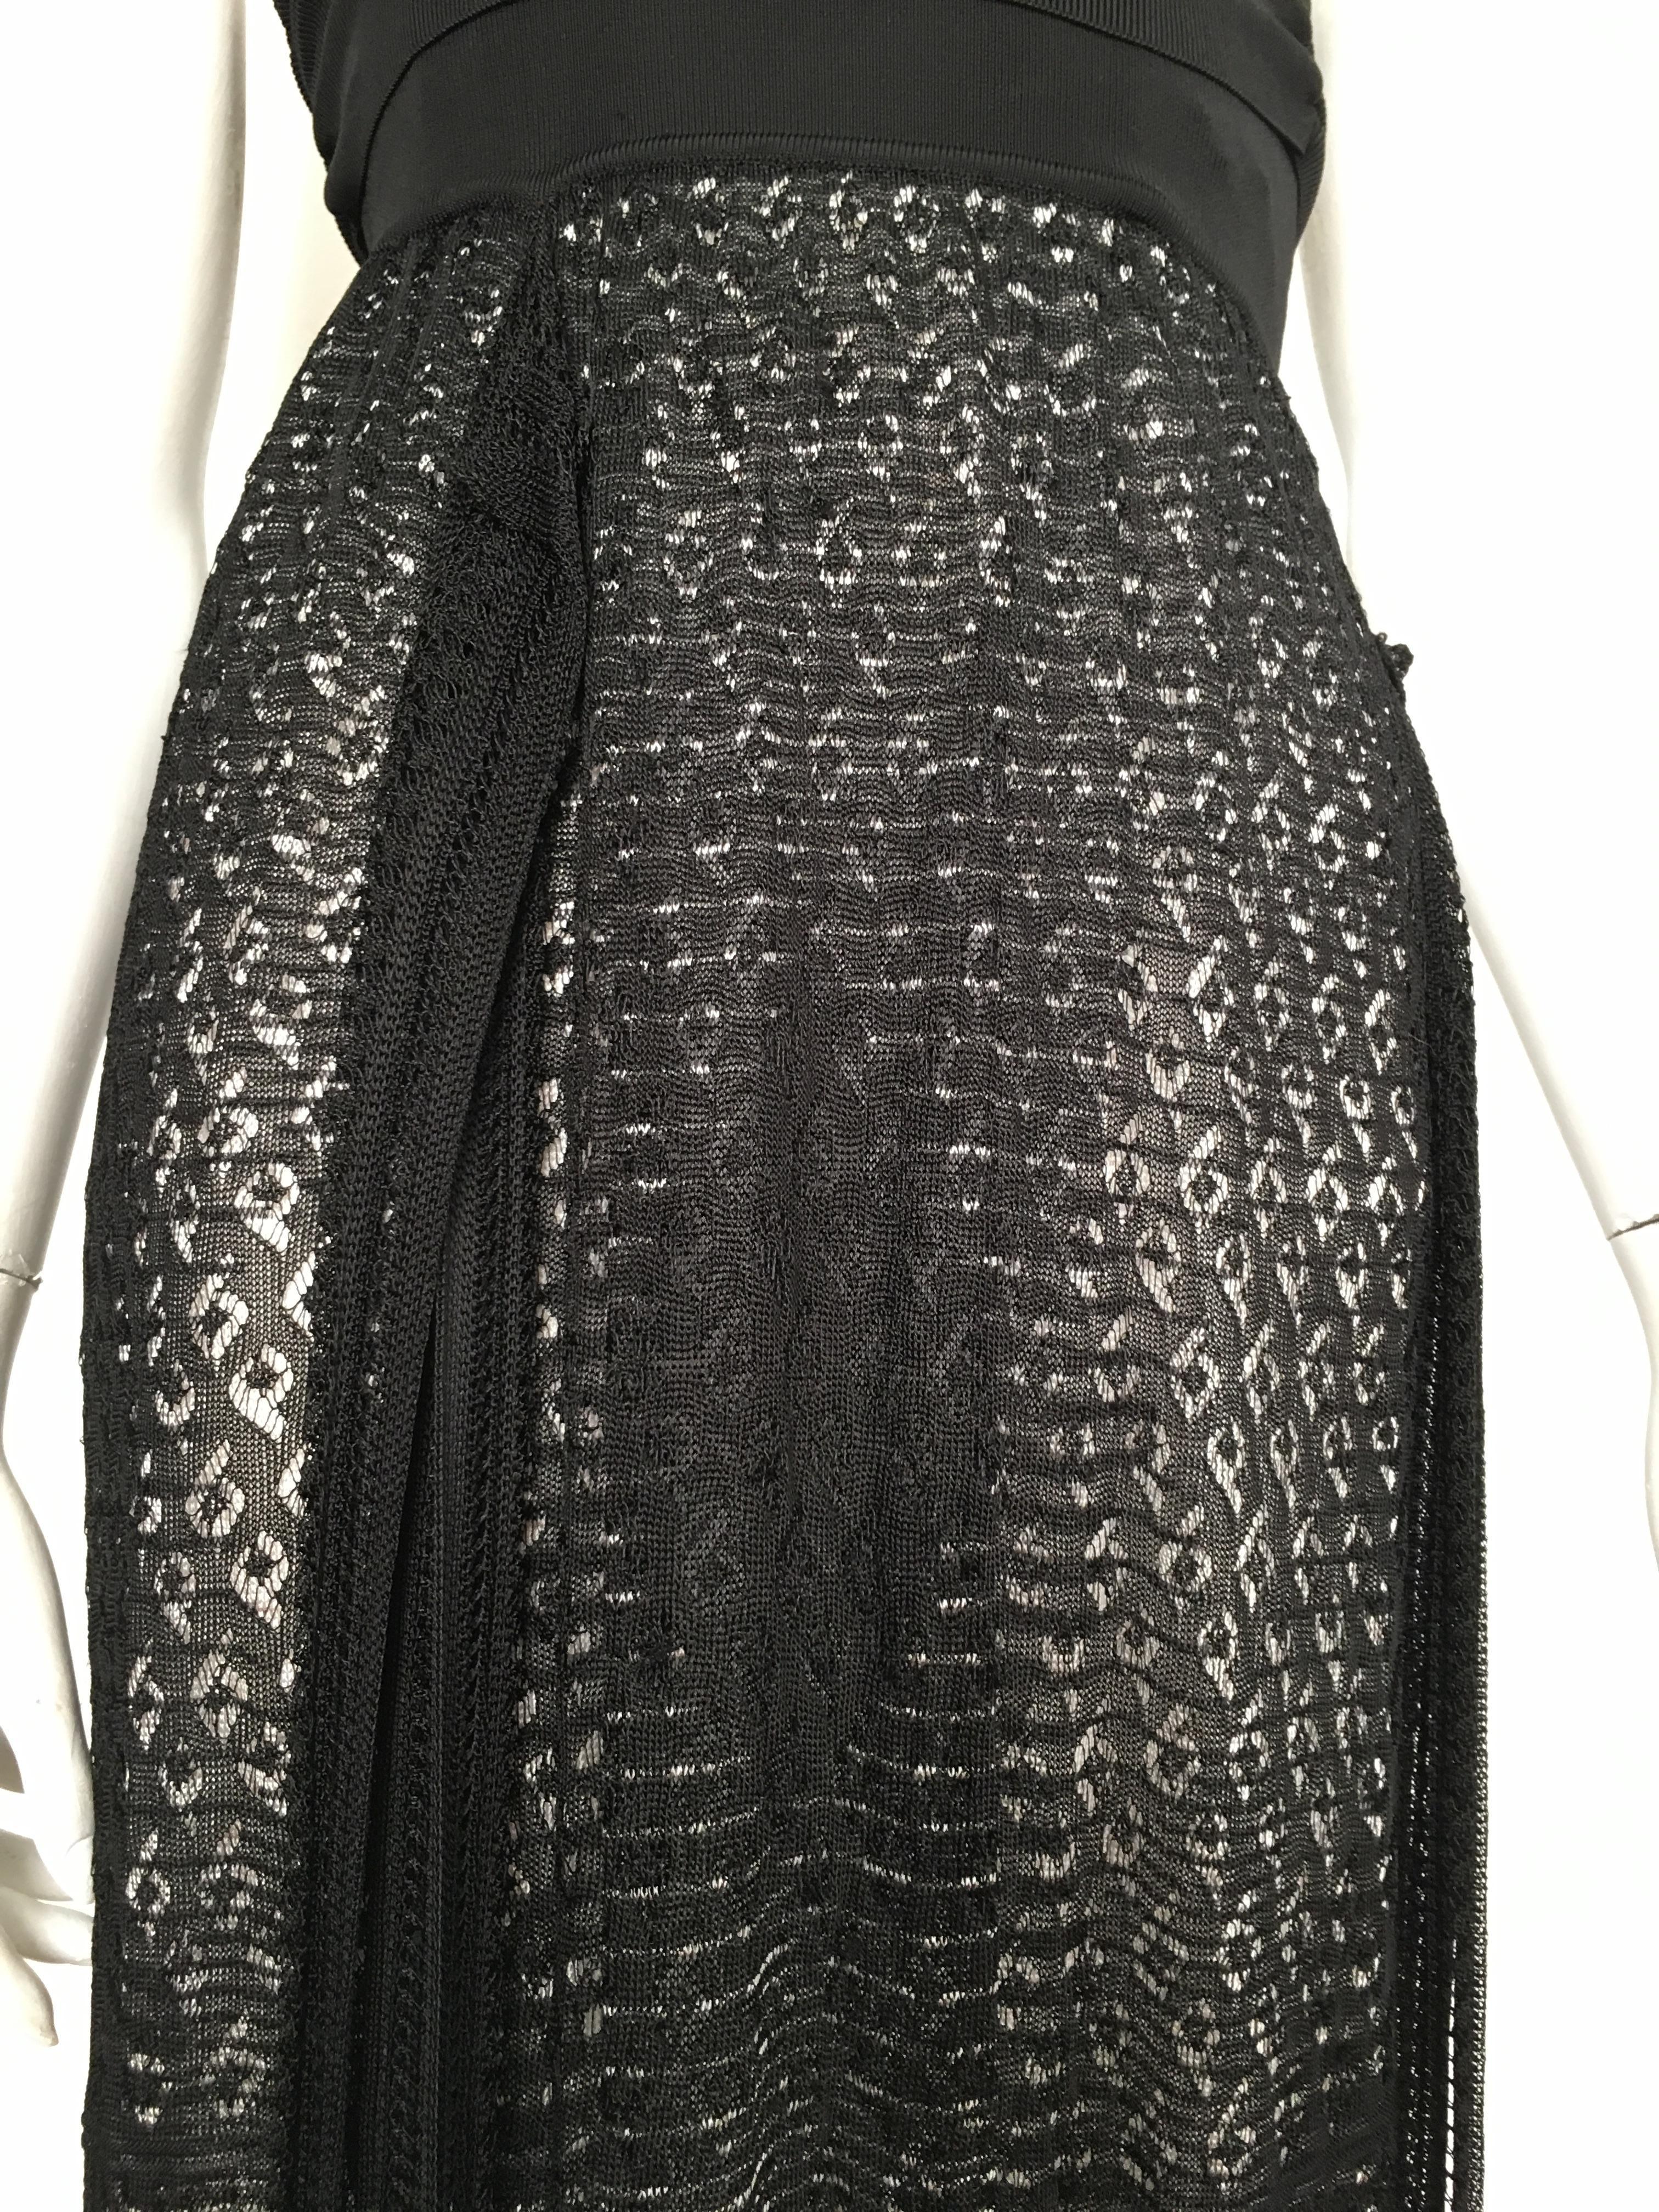 Missoni Lace Black and White Spaghetti Strap Maxi Dress In Excellent Condition For Sale In Atlanta, GA